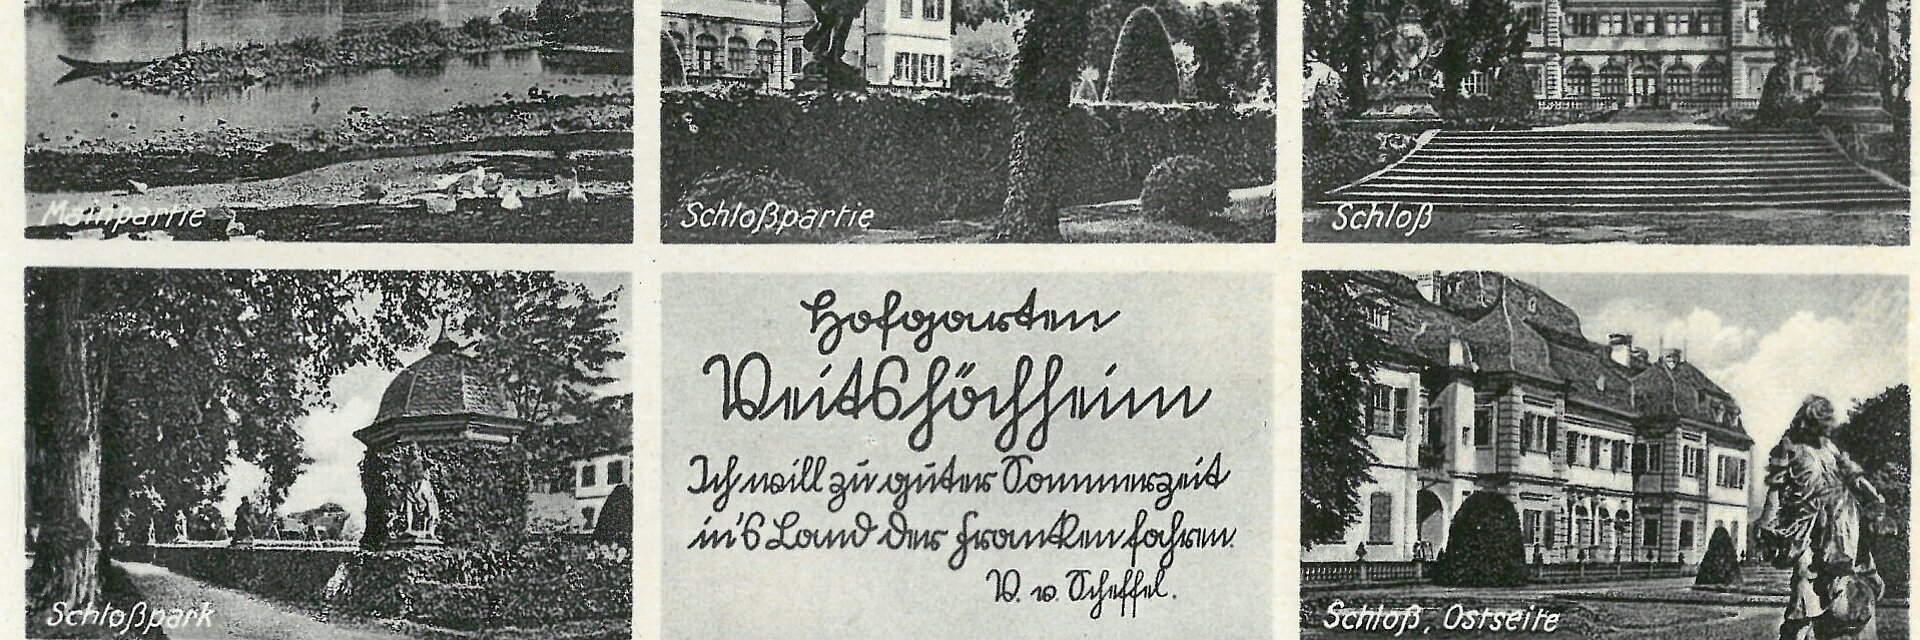 Historische Ansichtskarte Veitshöchheims